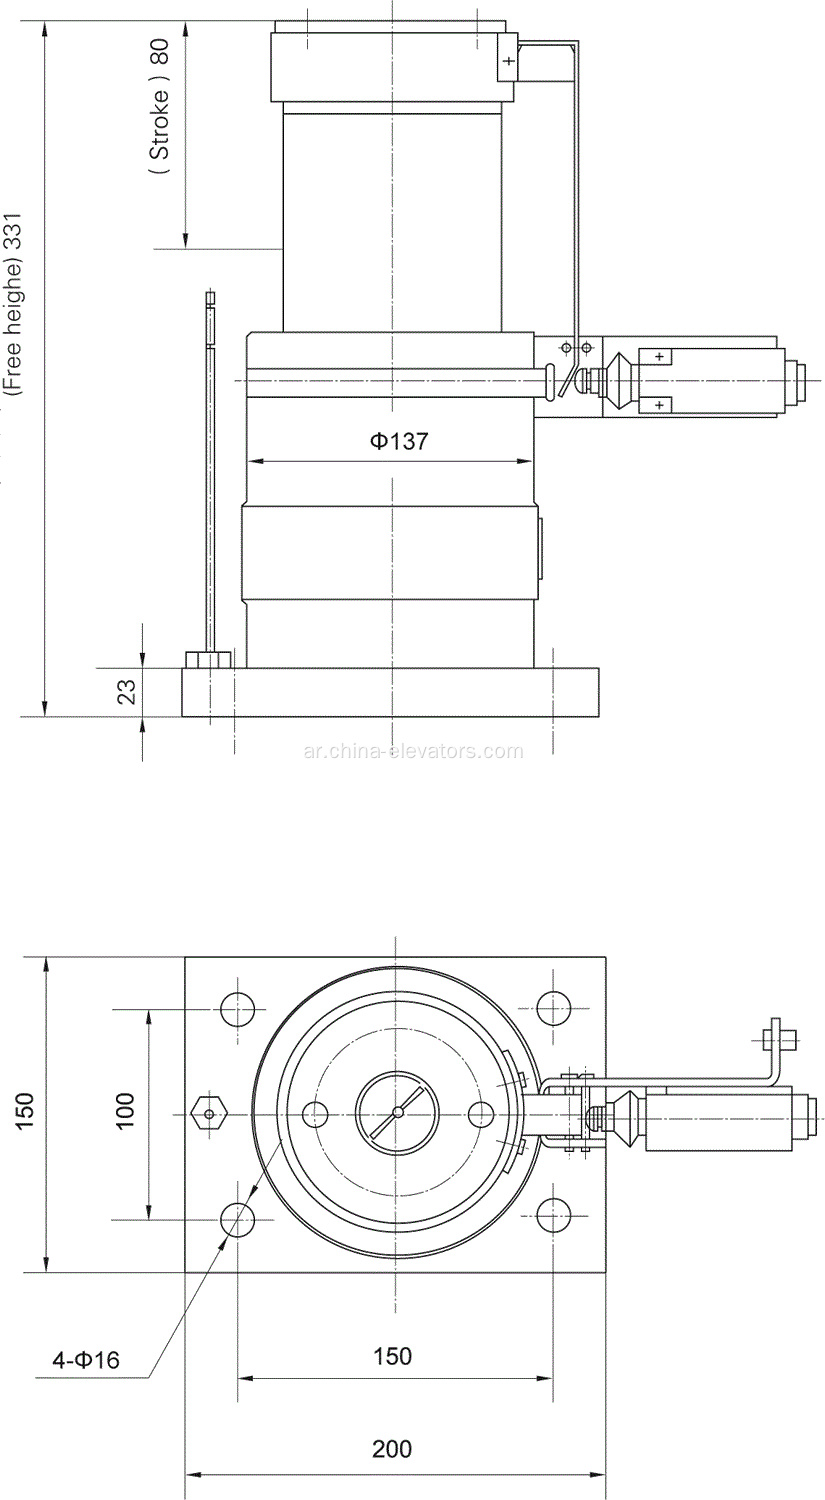 ThyssenKrupp Elevator Oil Buffer ≤1.0m / s